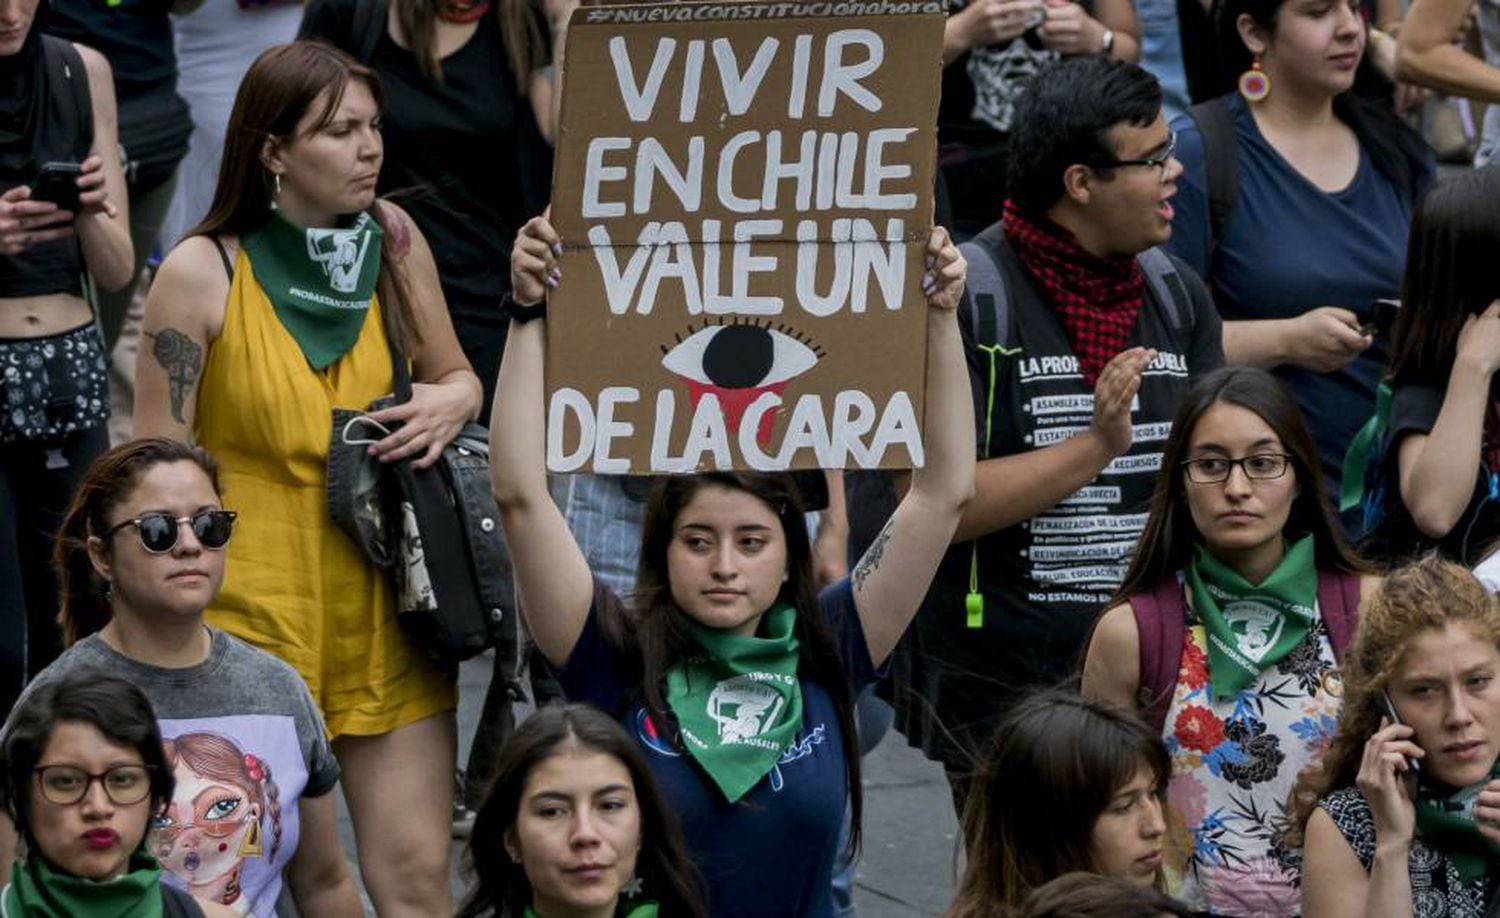 Manifestante segura cartaz onde se lê: “Viver no Chile custa o olho da cara”.